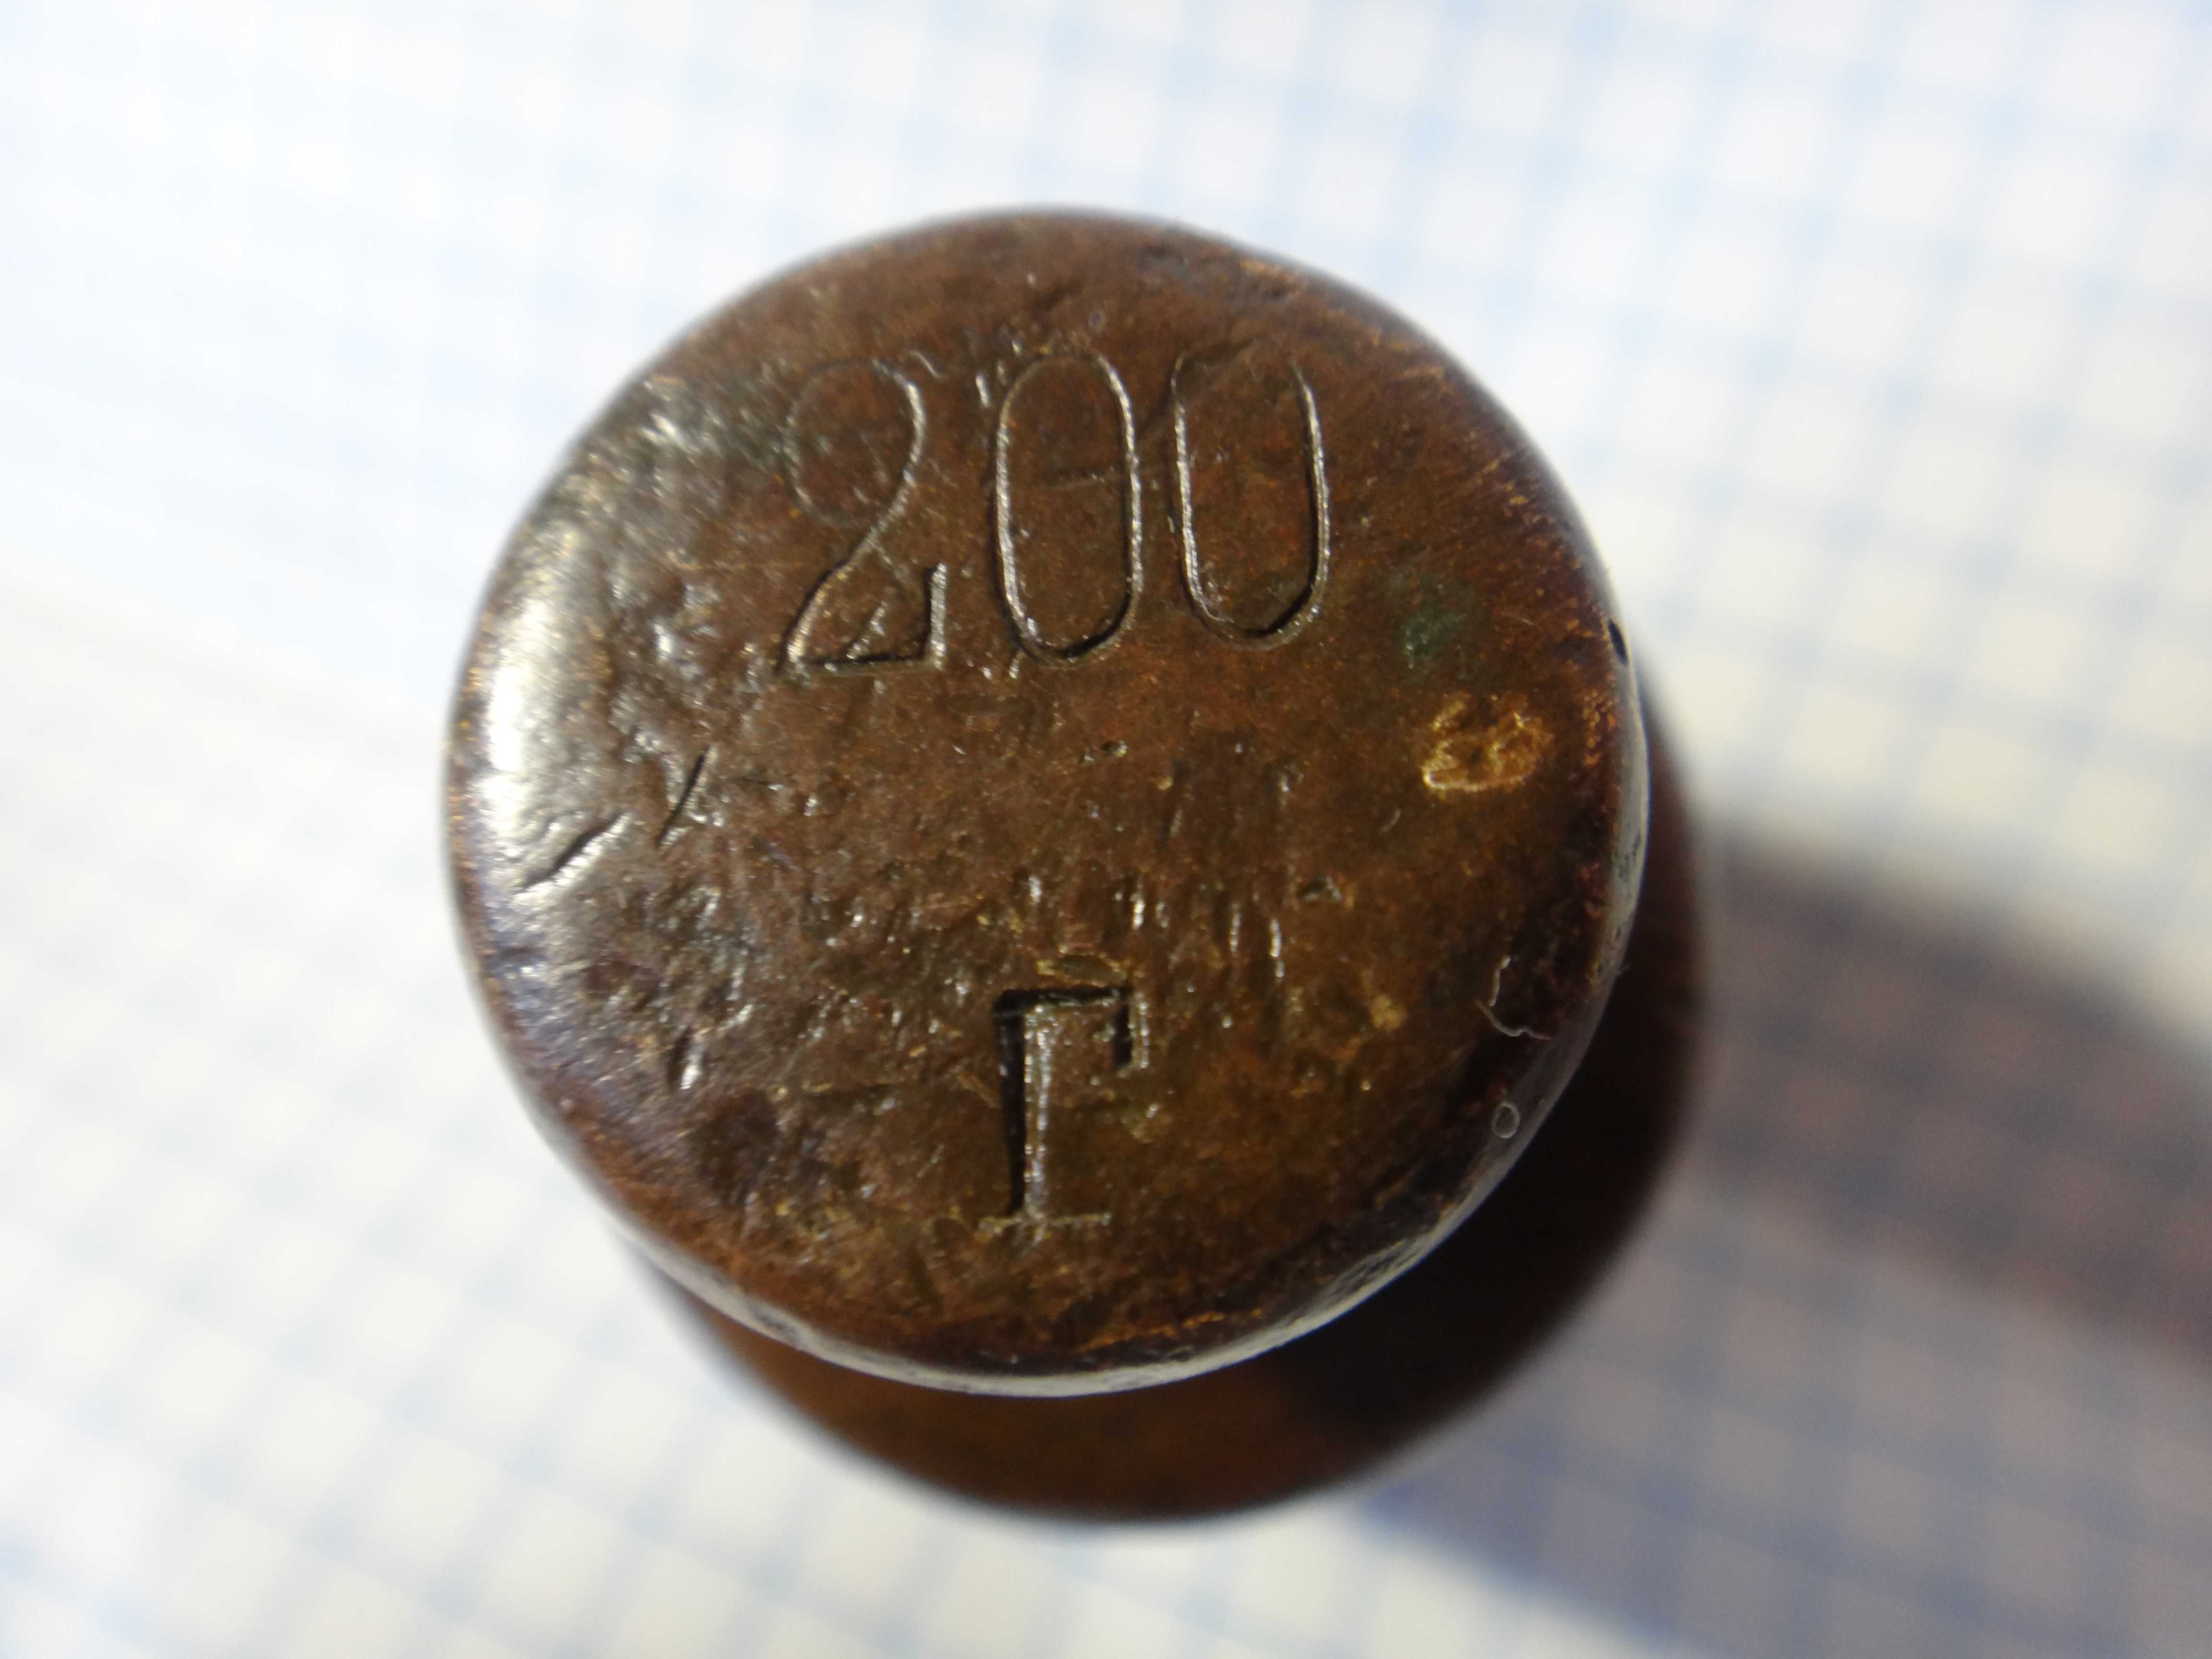 Гирька весовая 200г, старинная 1925г, СССР, медь, винтаж